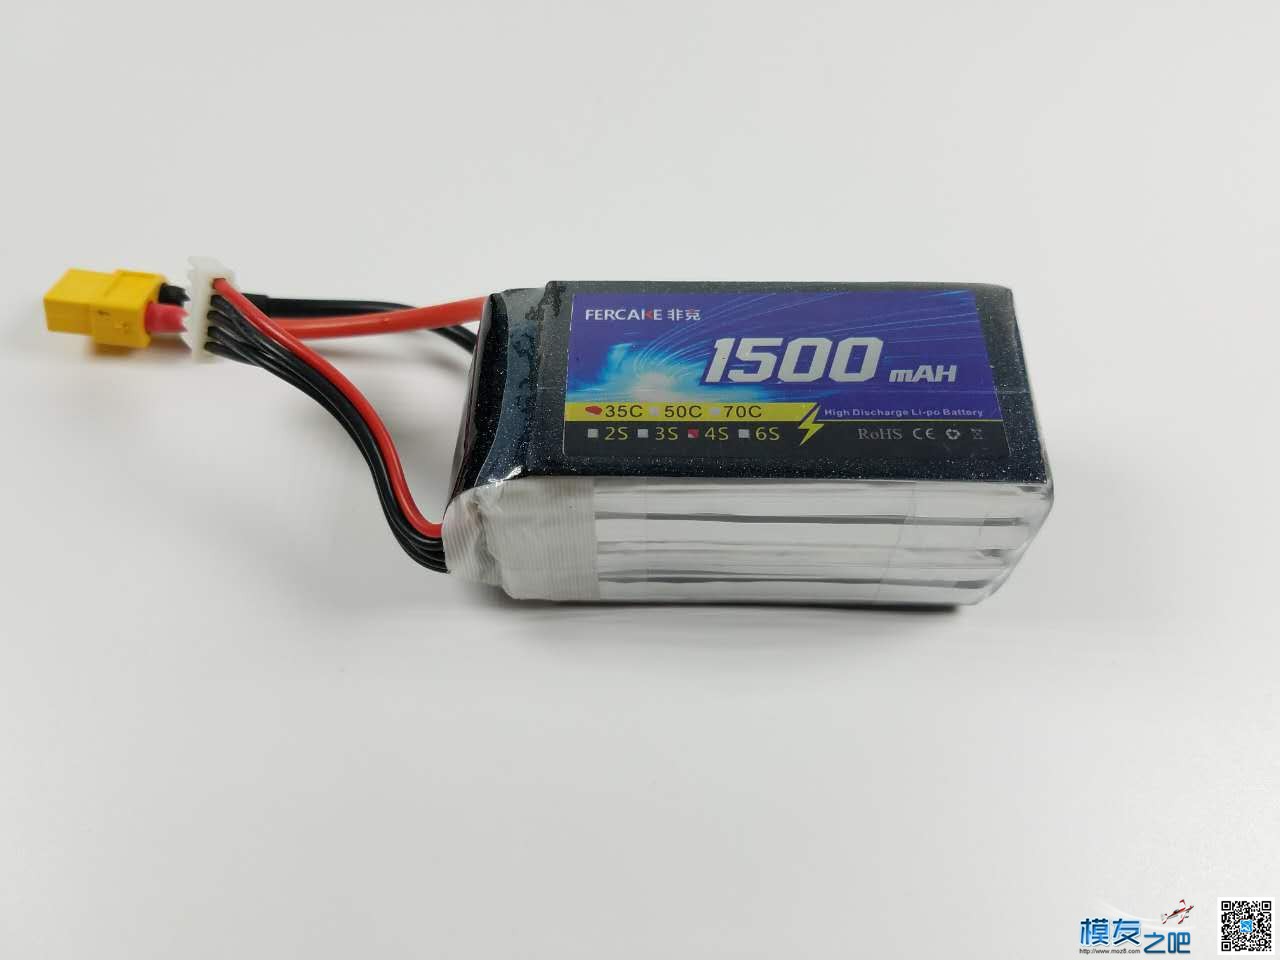 非克电池测试体验活动 电池,非克汽车02,taobao 作者:飞天狼 4025 